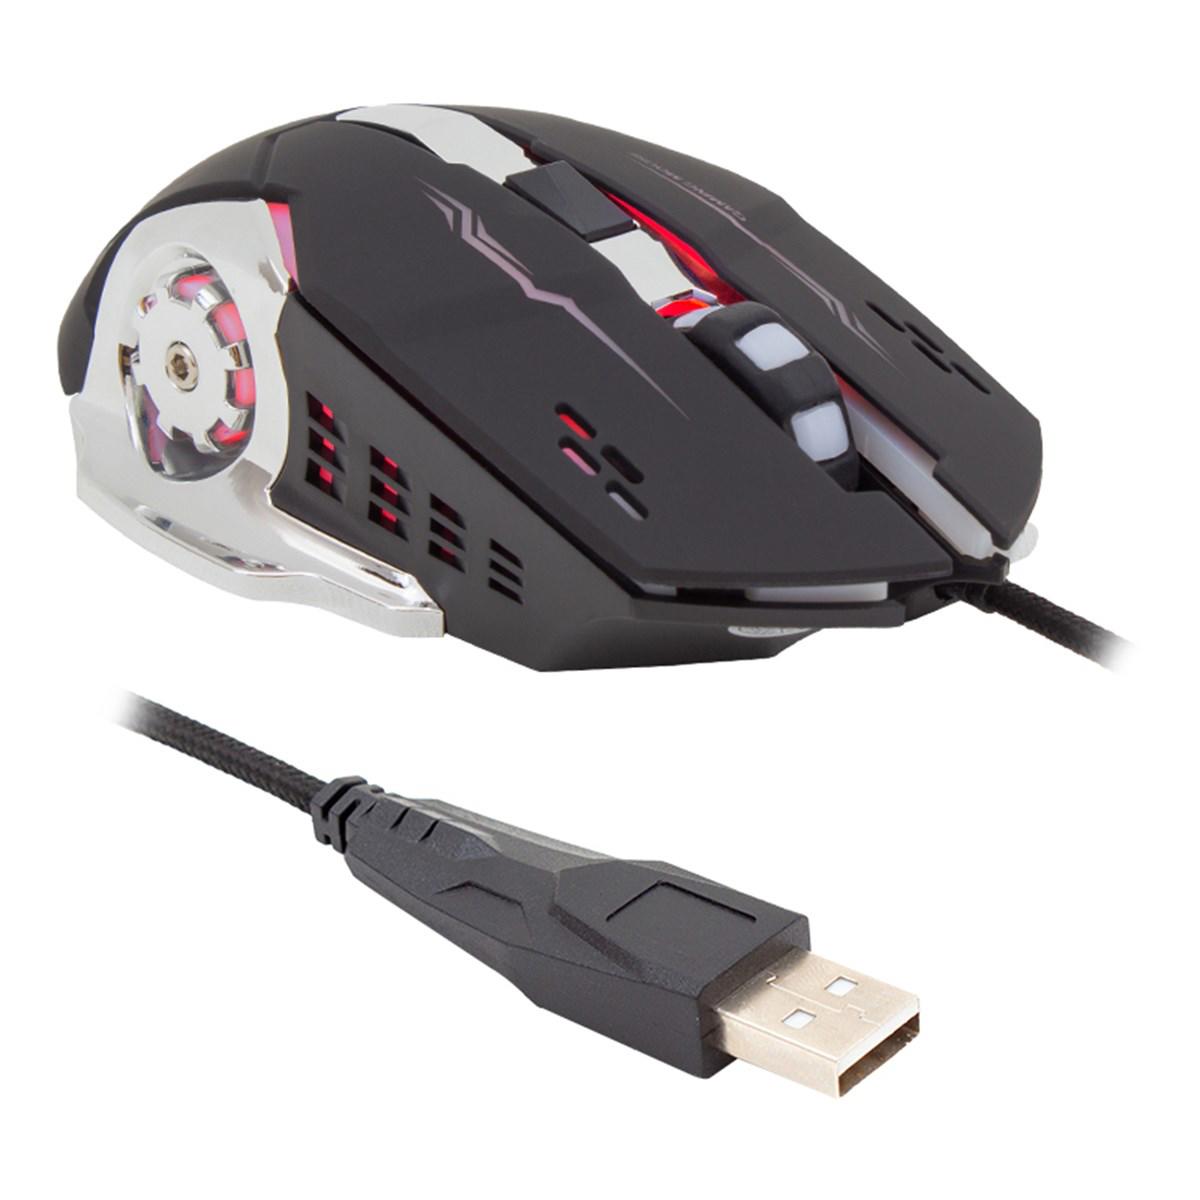 Weko HL-4728 Kablolu Siyah Gaming Mouse